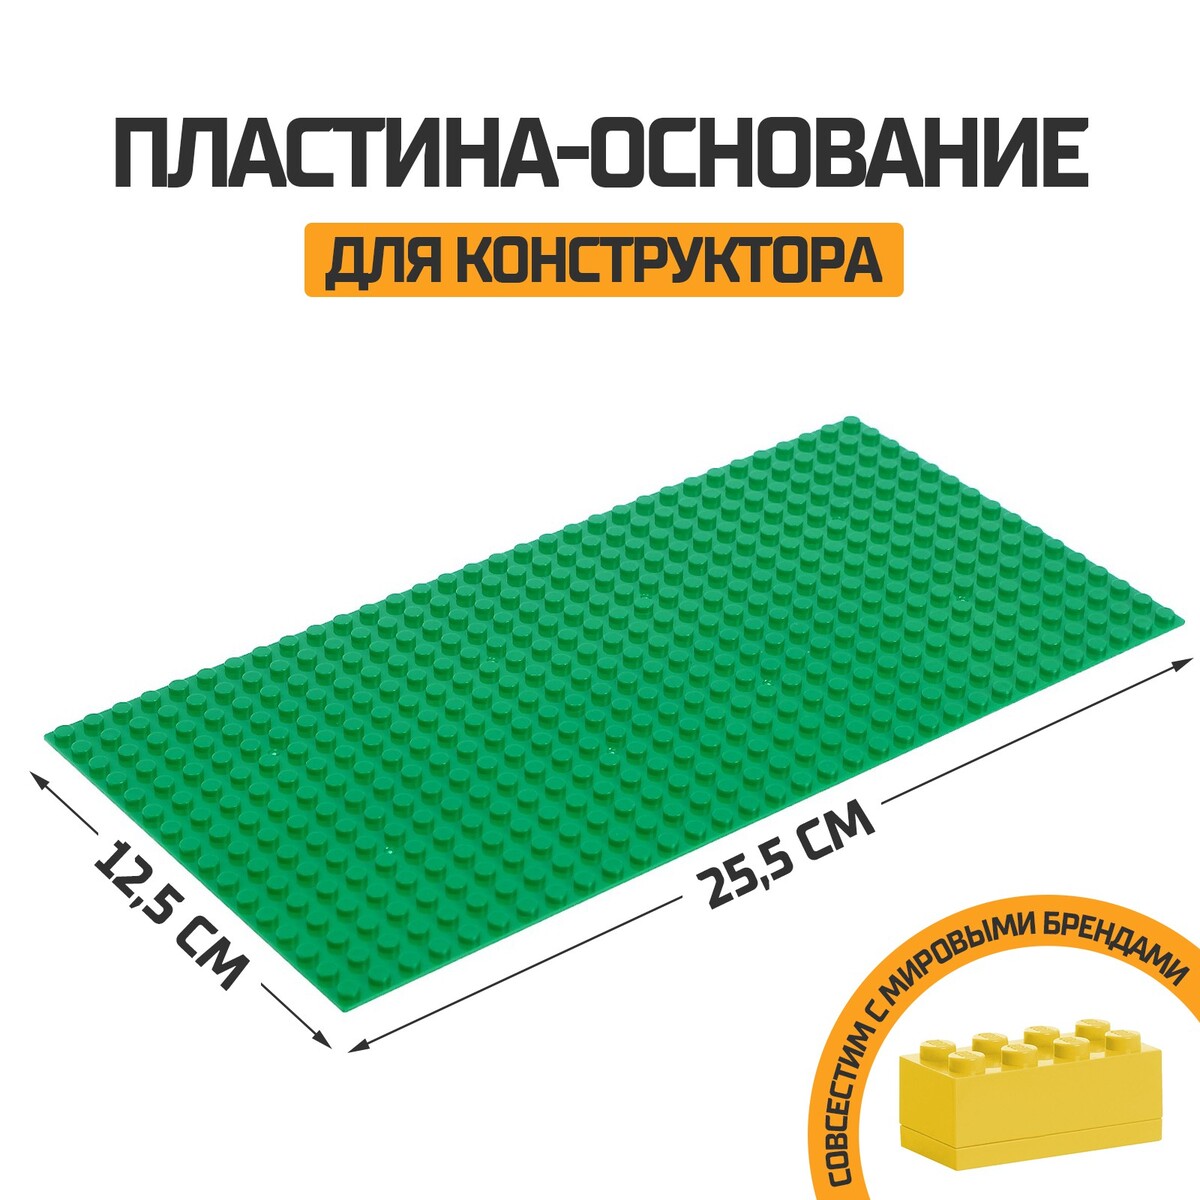 Пластина-основание для конструктора, 25,5 х 12,5 см, цвет зеленый